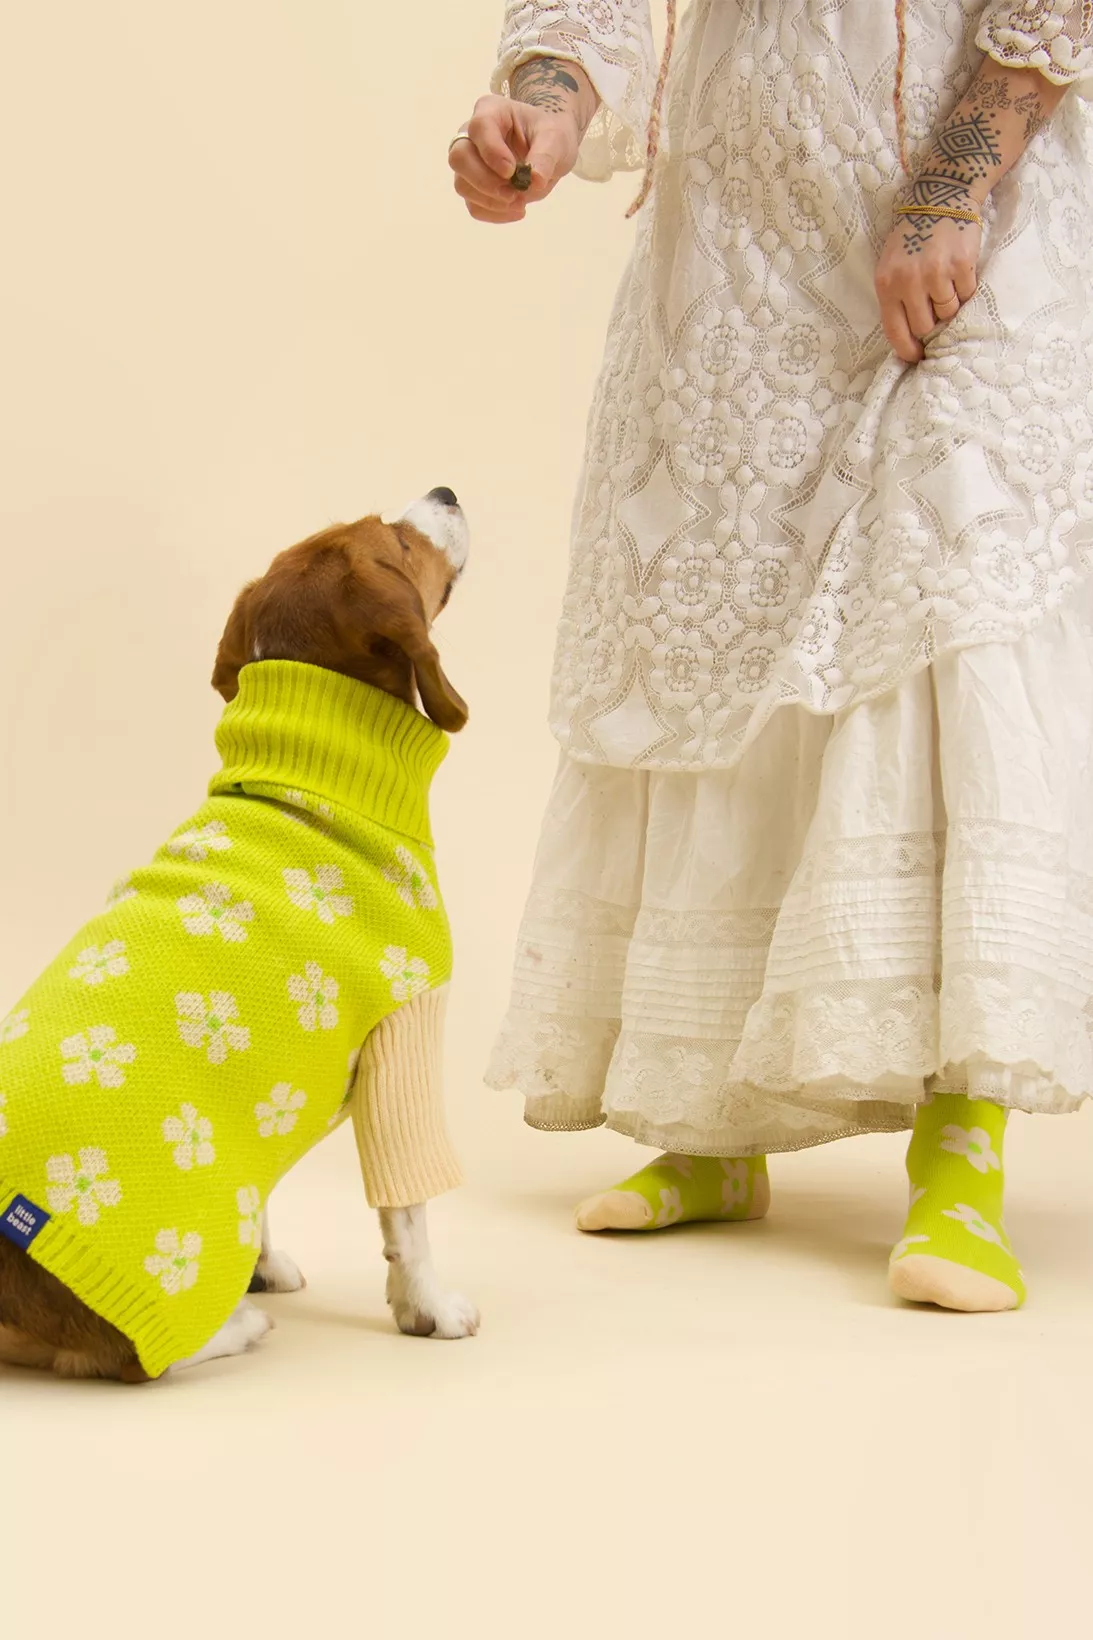 Little Beast випустили колекцію одягу для людей та їхніх вихованців: кофточка для собаки (1546 грн) шкарпетки (407 грн)